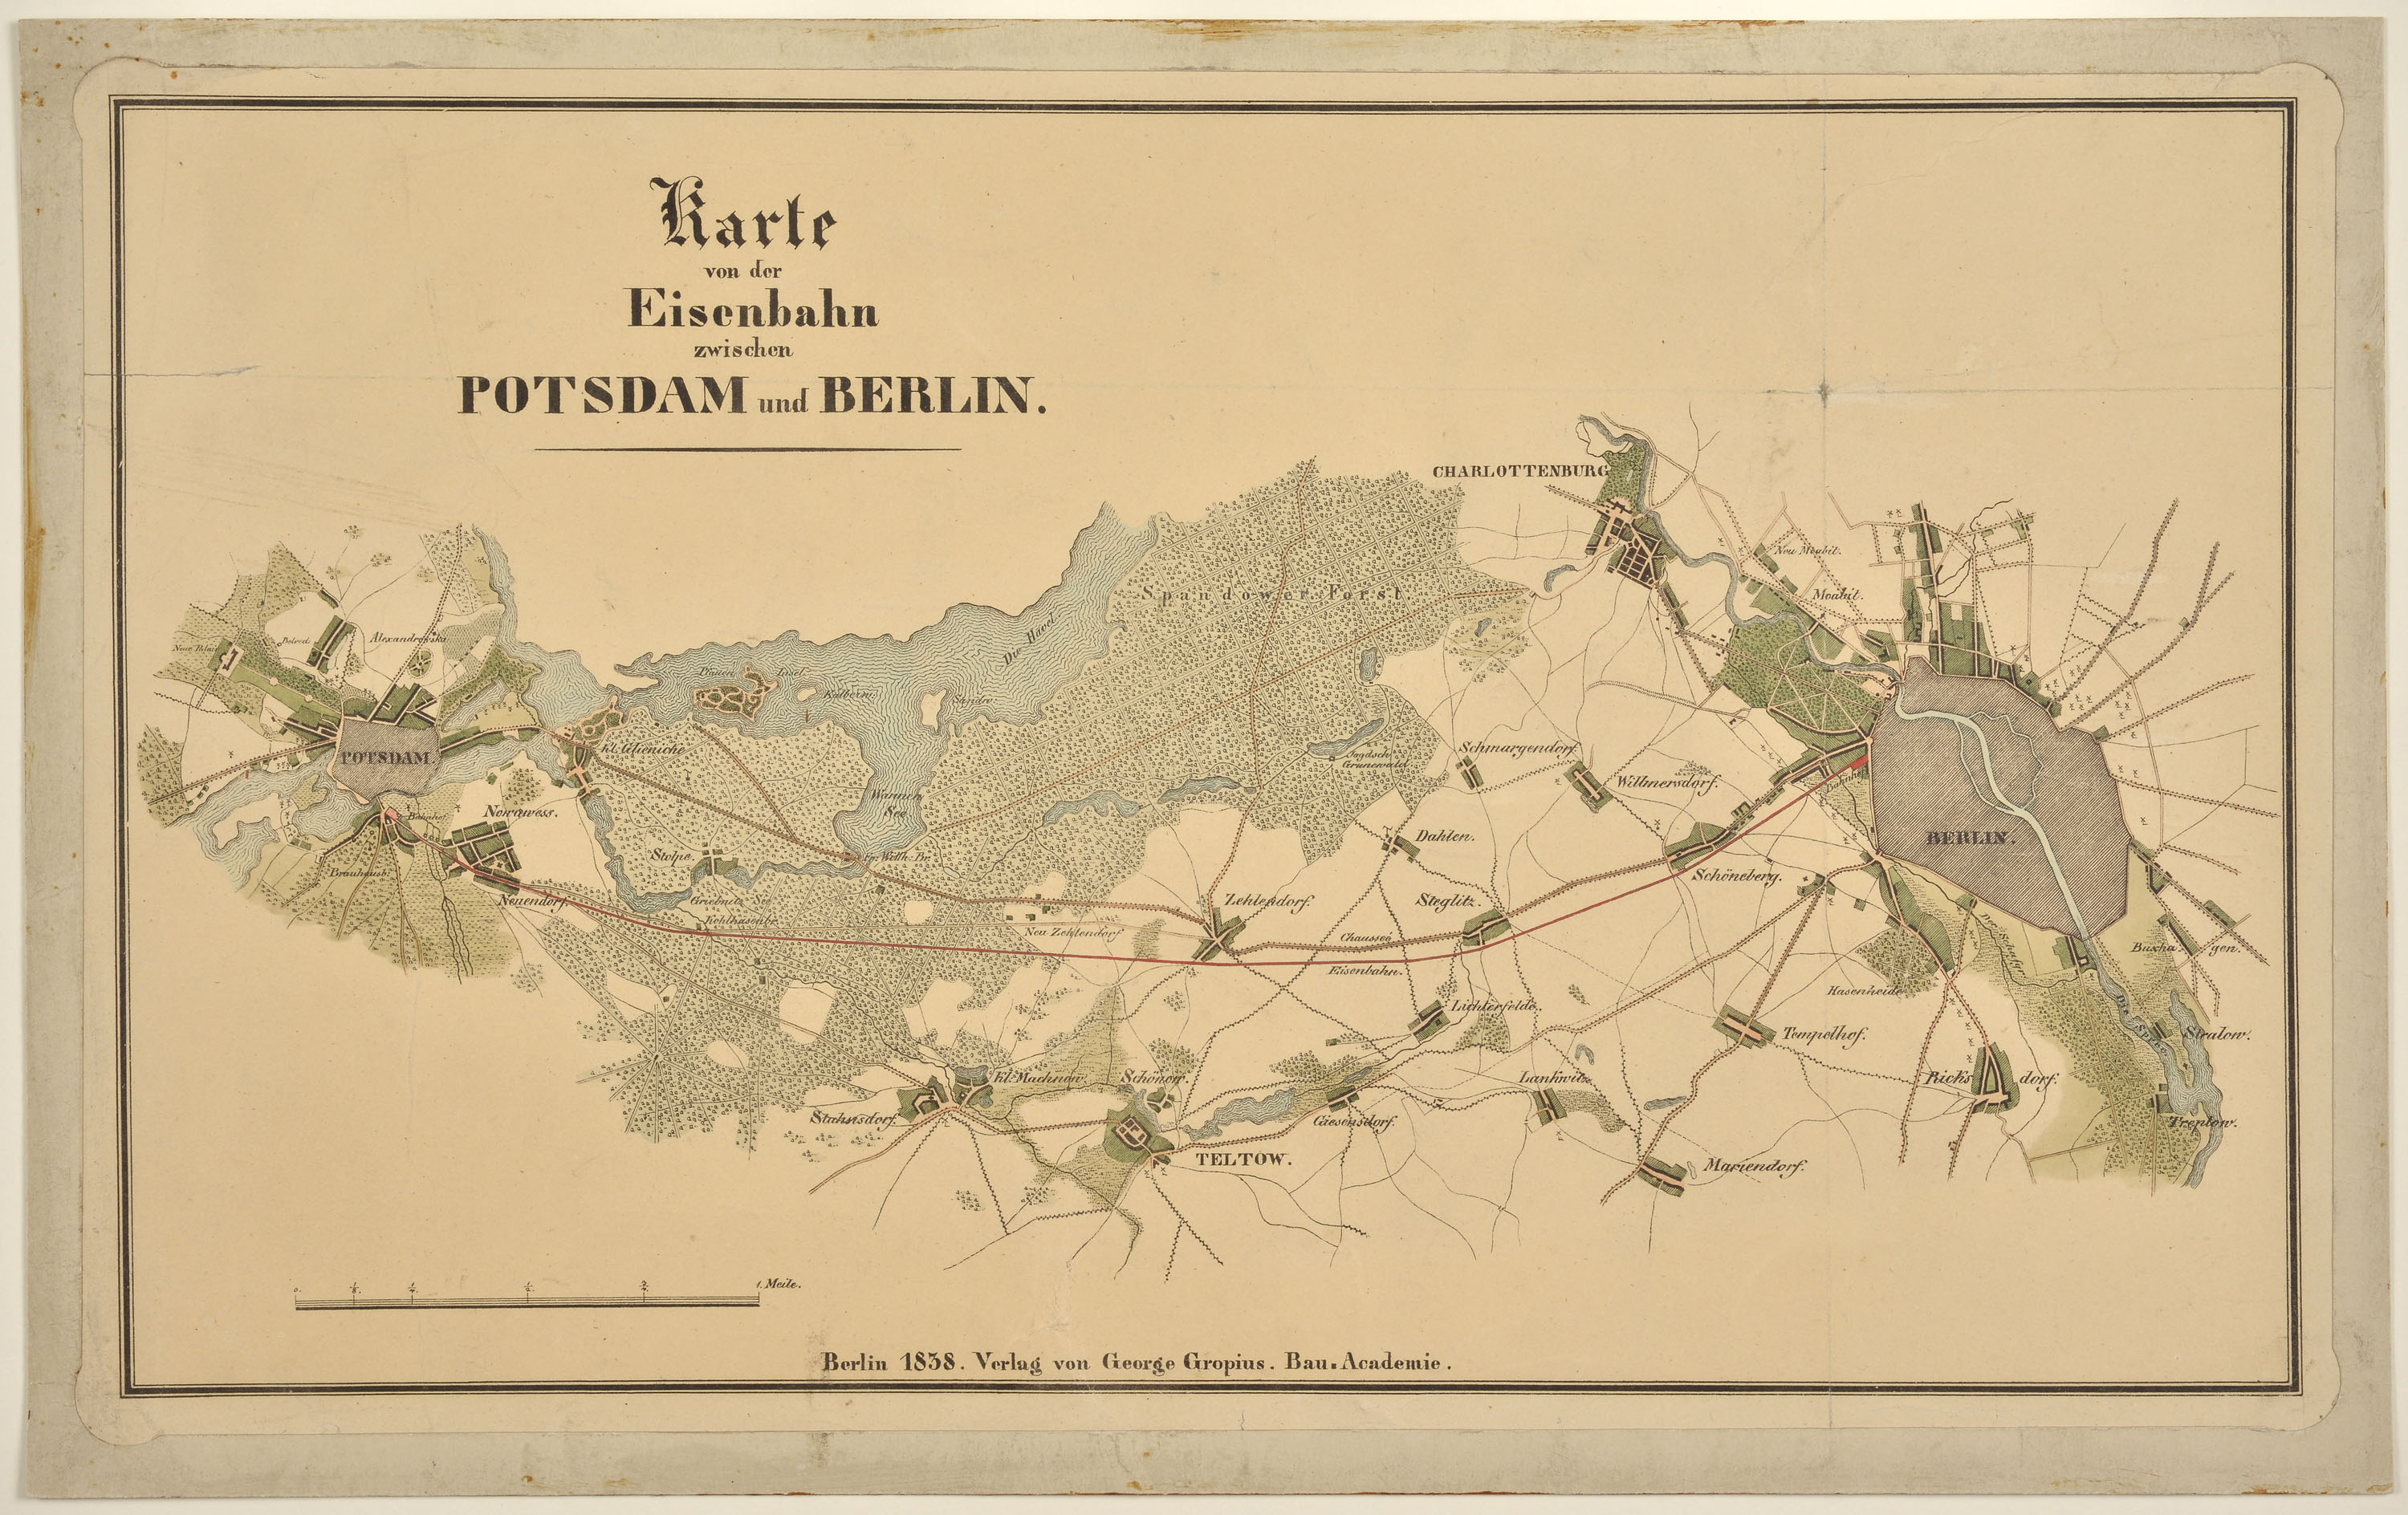 Karte von der Eisenbahn zwischen Potsdam und Berlin (Potsdam Museum - Forum für Kunst und Geschichte CC BY-NC-SA)